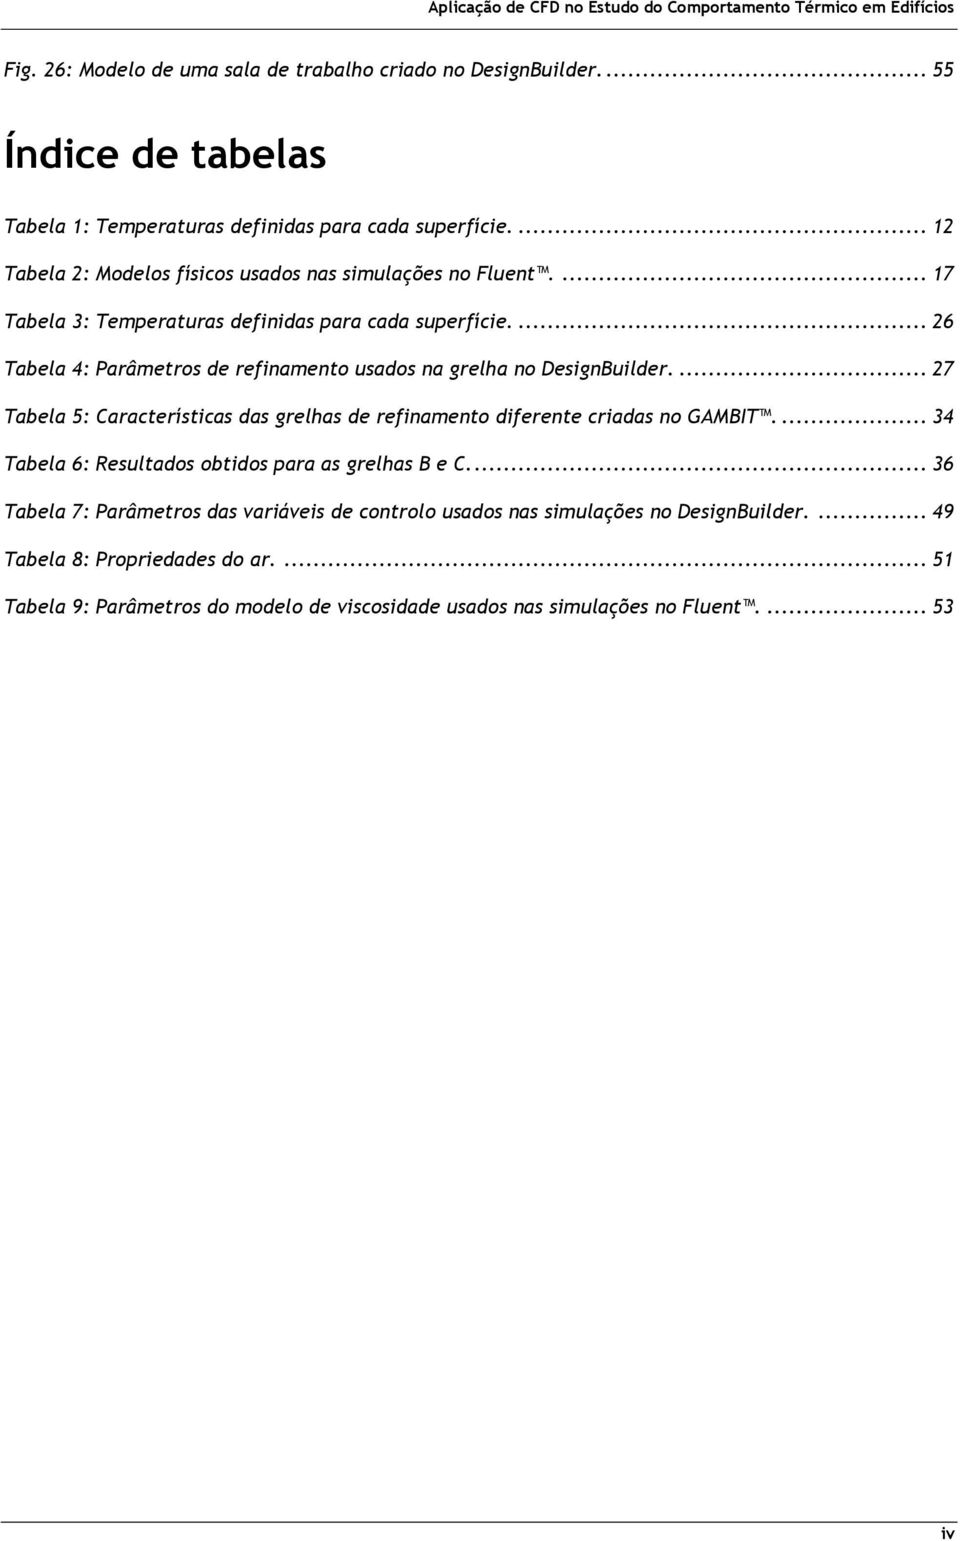 ... 26 Tabela 4: Parâmetros de refinamento usados na grelha no DesignBuilder.... 27 Tabela 5: Características das grelhas de refinamento diferente criadas no GAMBIT.